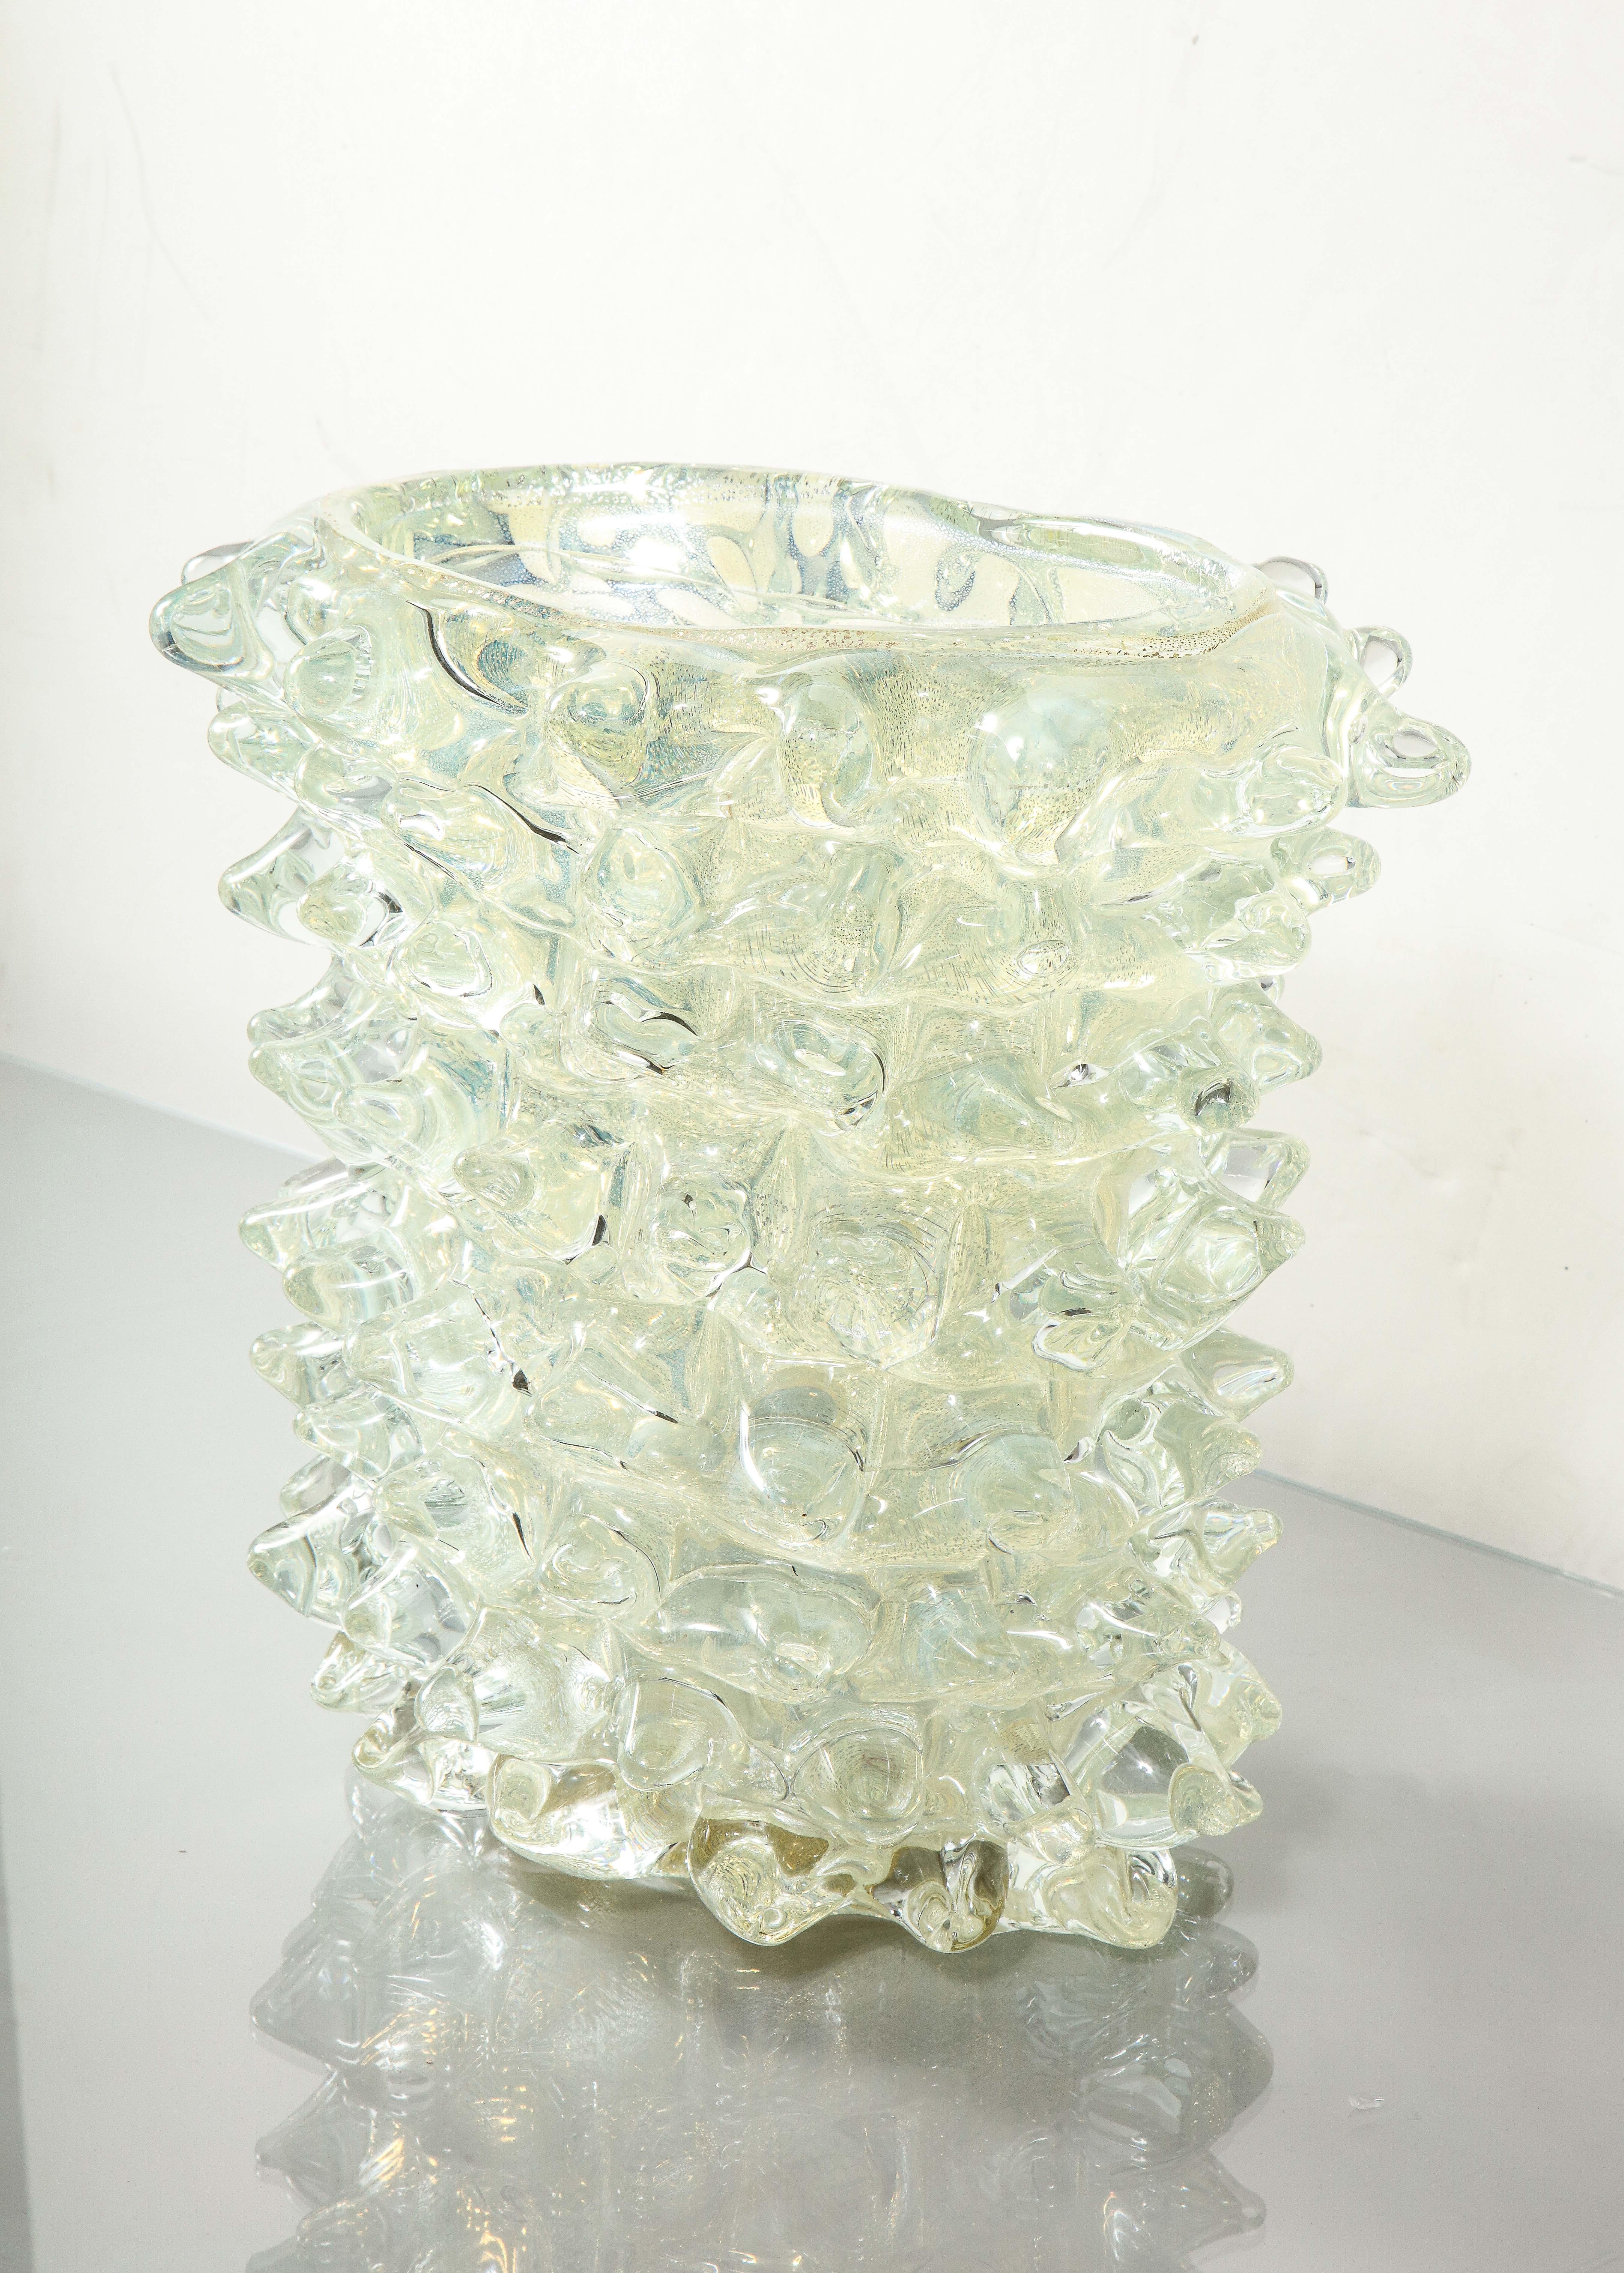 Vase aus mundgeblasenem, silbernem, opalisierendem Glas im Stil der Jahrhundertmitte mit Ährenmuster nach Art von Barovier, Italien.

